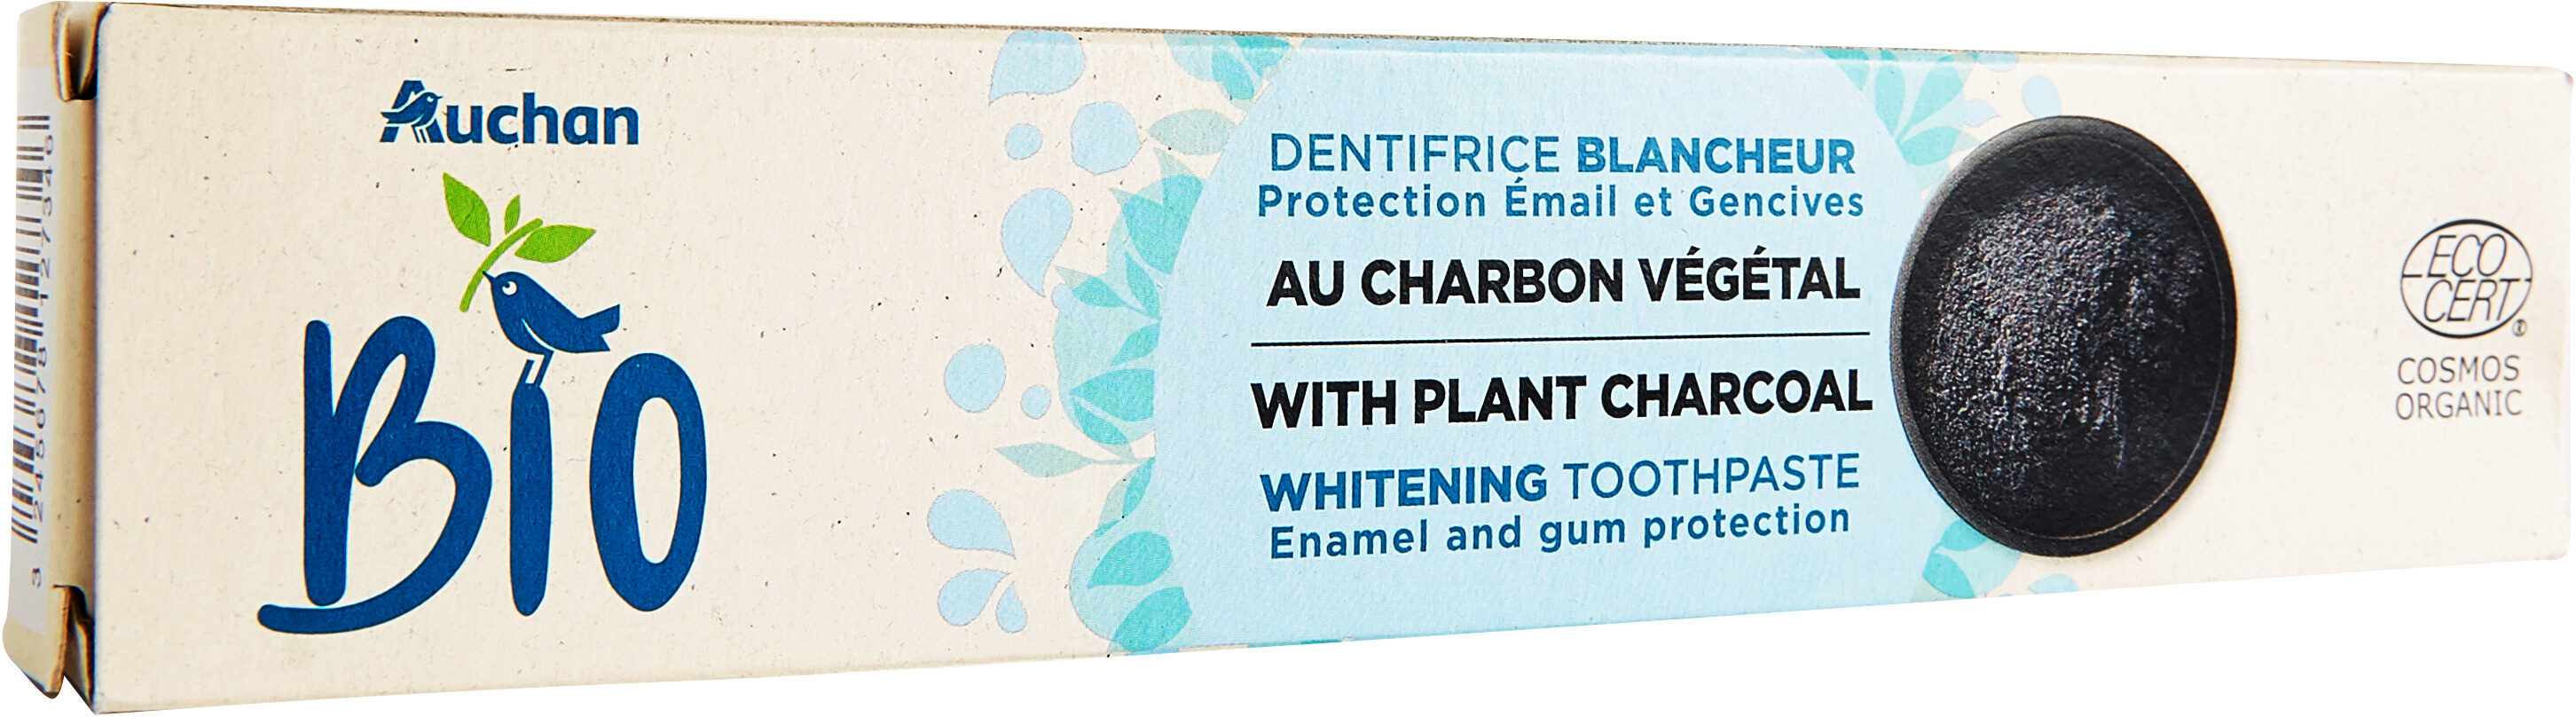 Dentifrice blancheur au charbon vegetal - Produkt - fr